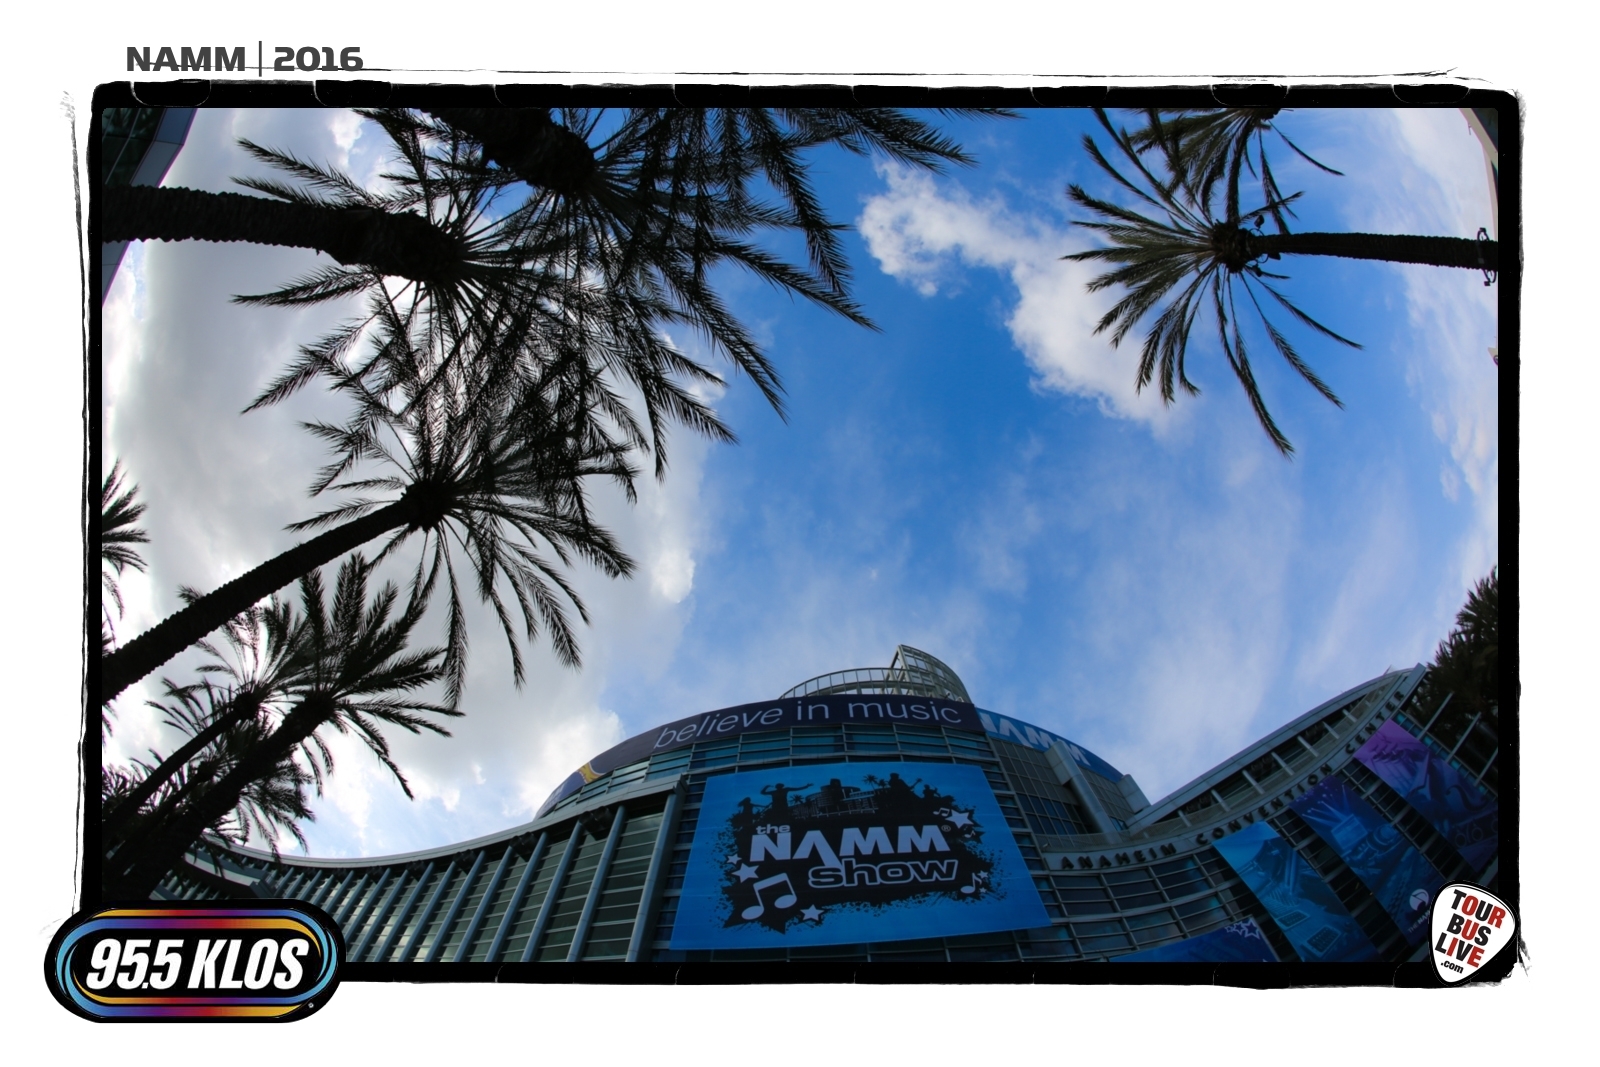 NAMM 2016. © 2016 TourBusLive.com.